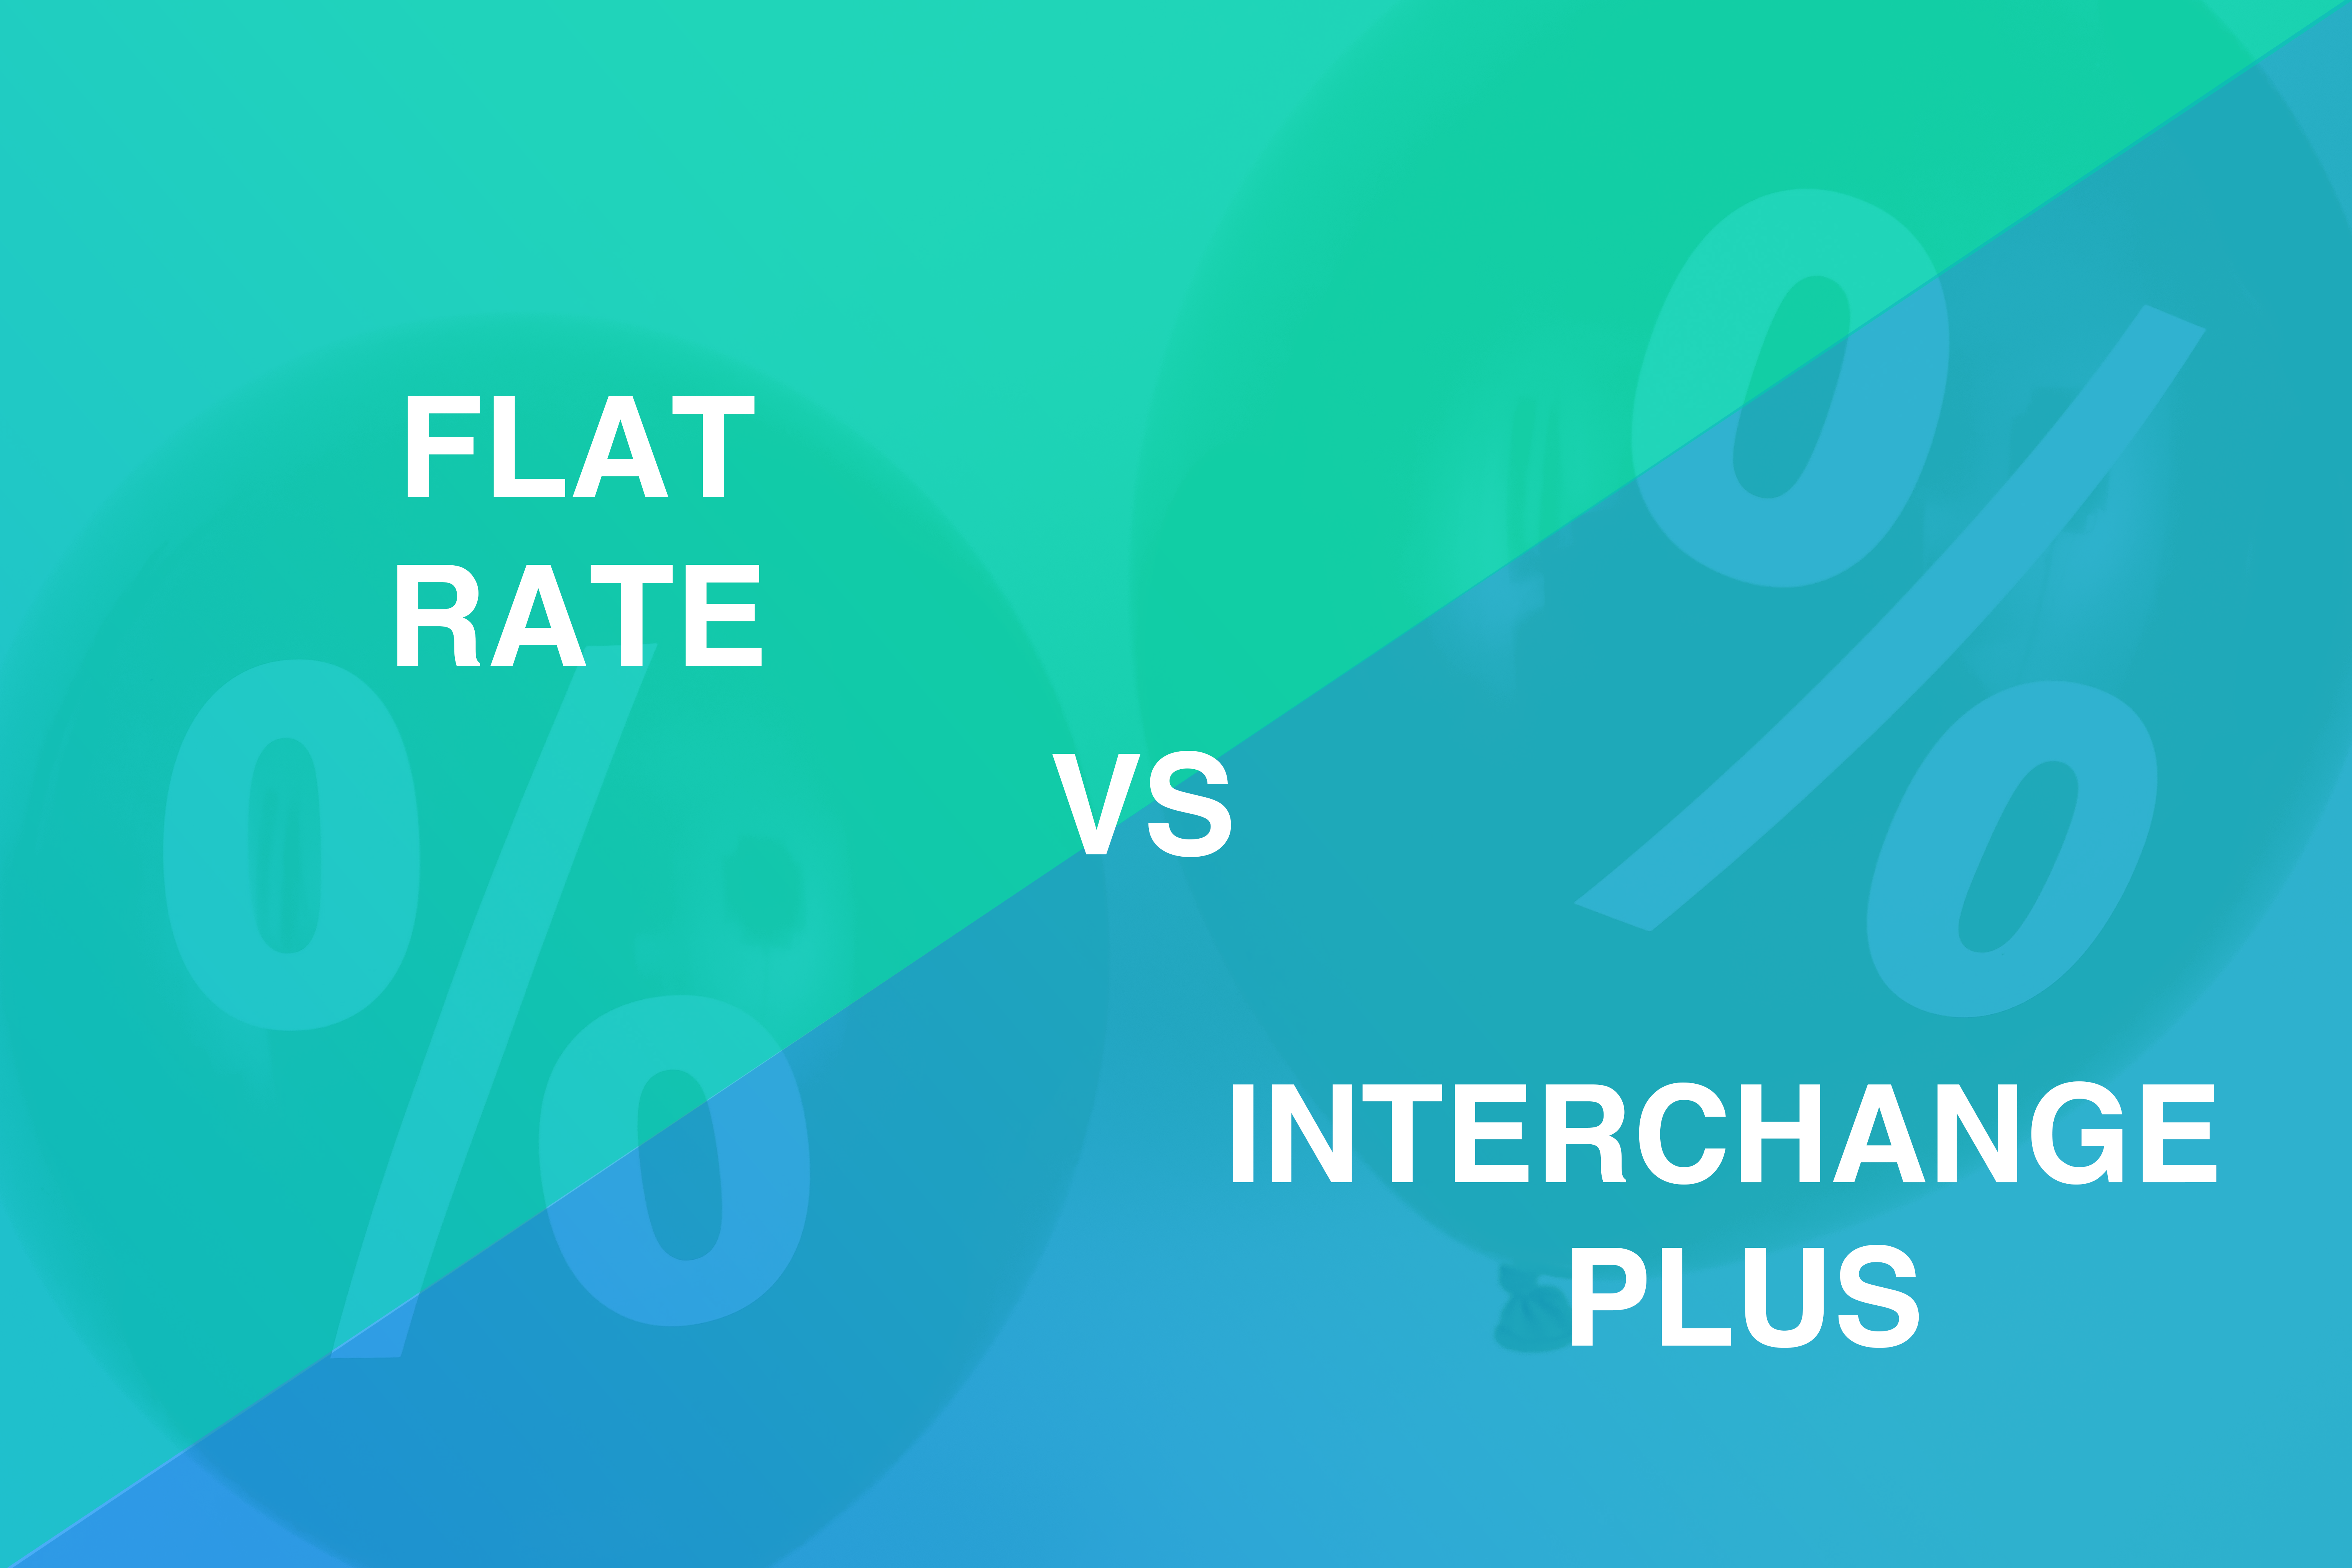 Flat rate merchant processing vs Interchange plus services